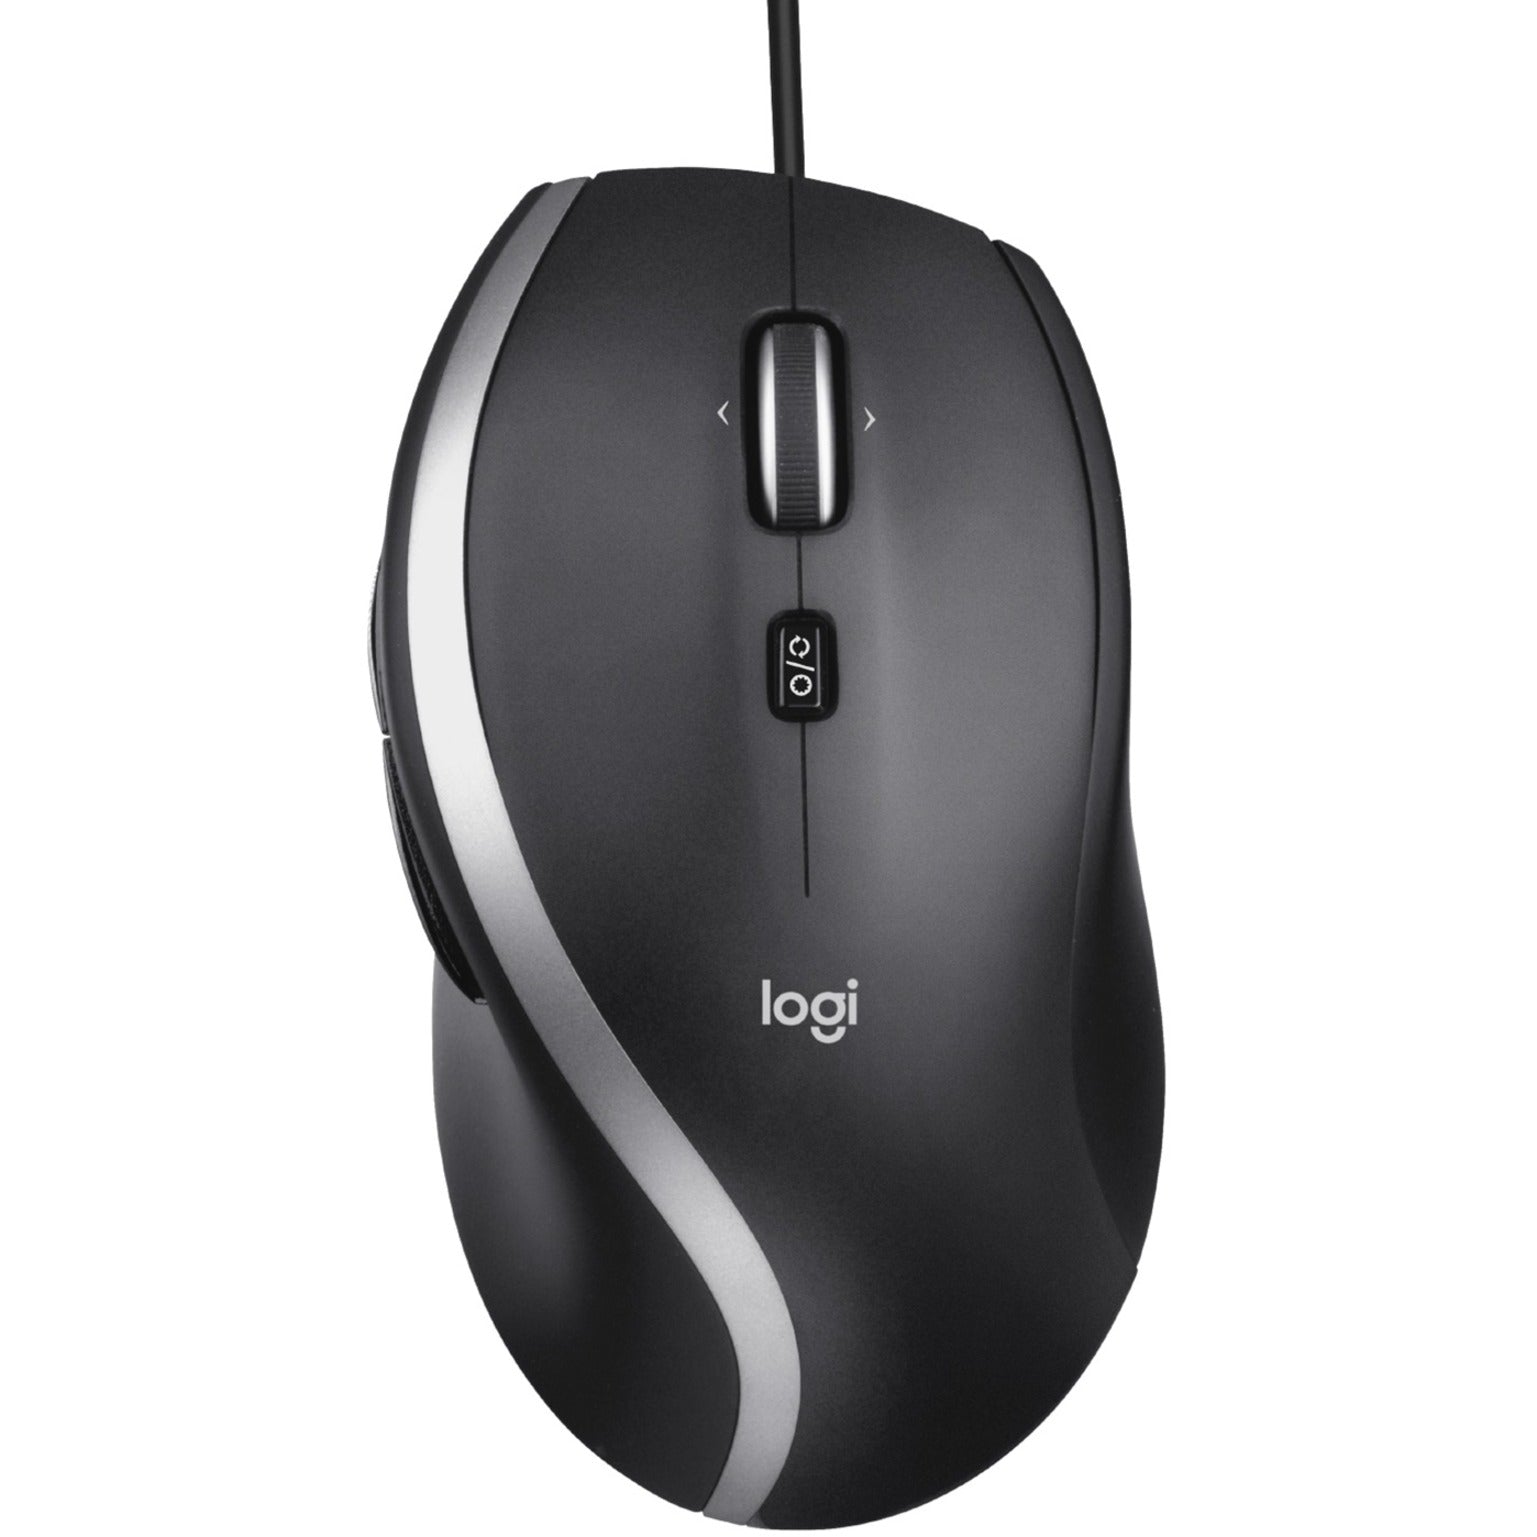 Logitech 910-005783 M500S Advanced Corded Mouse, Full-size, Tilt Wheel, 4000 dpi, USB